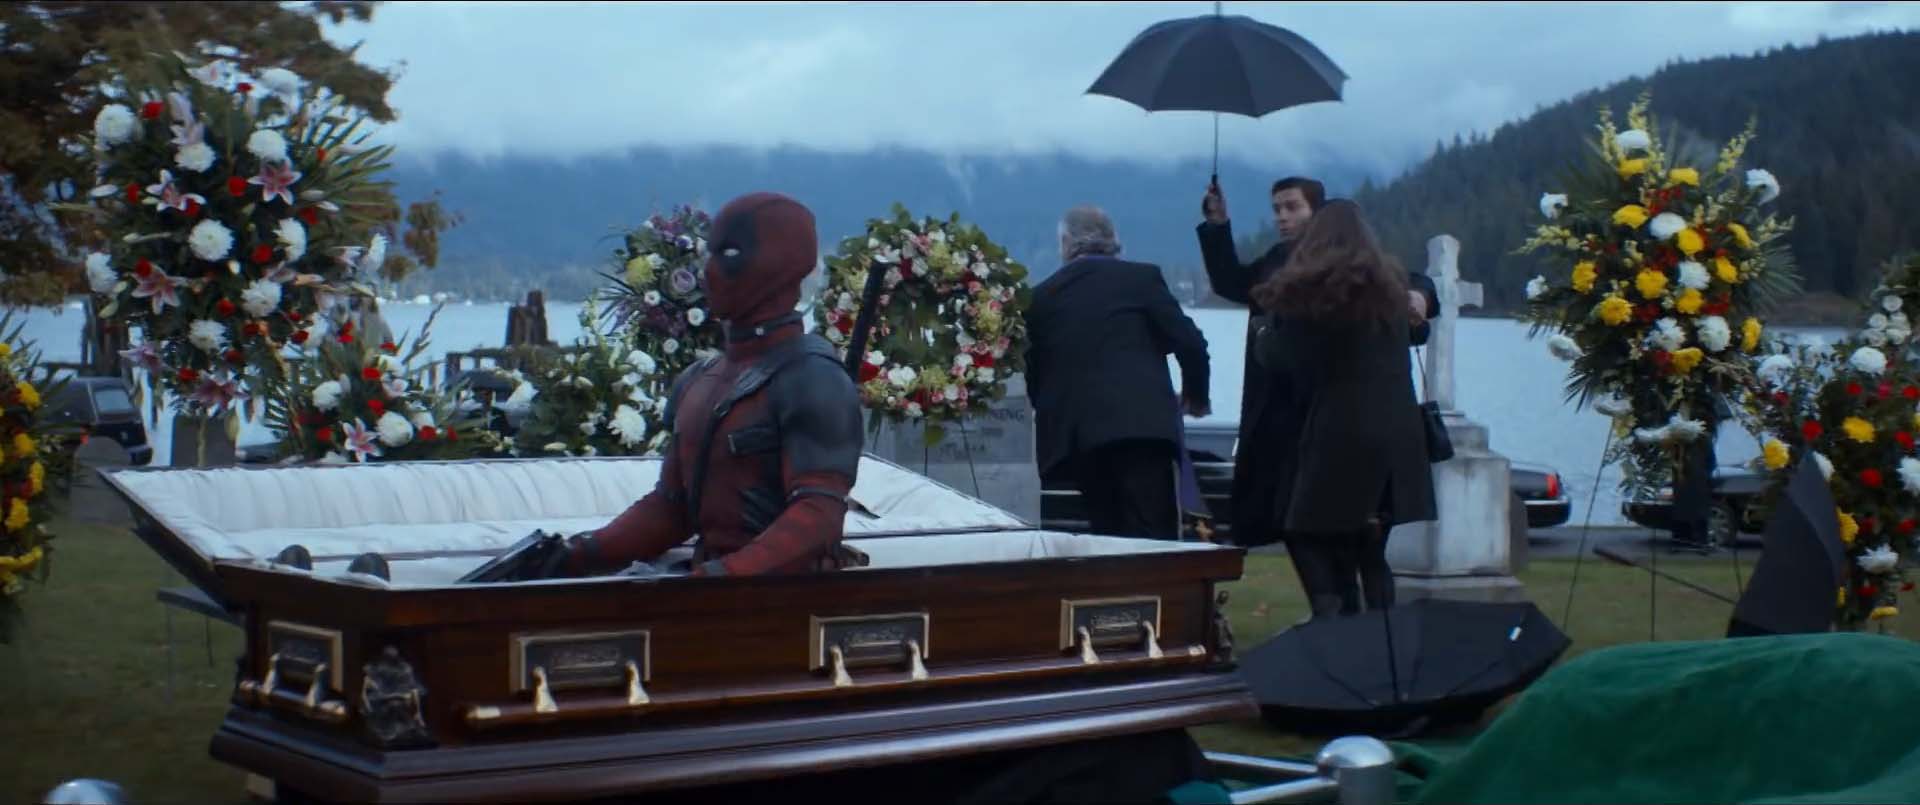 Deadpool sort d'un cercueil afin de tuer sa cible par surprise